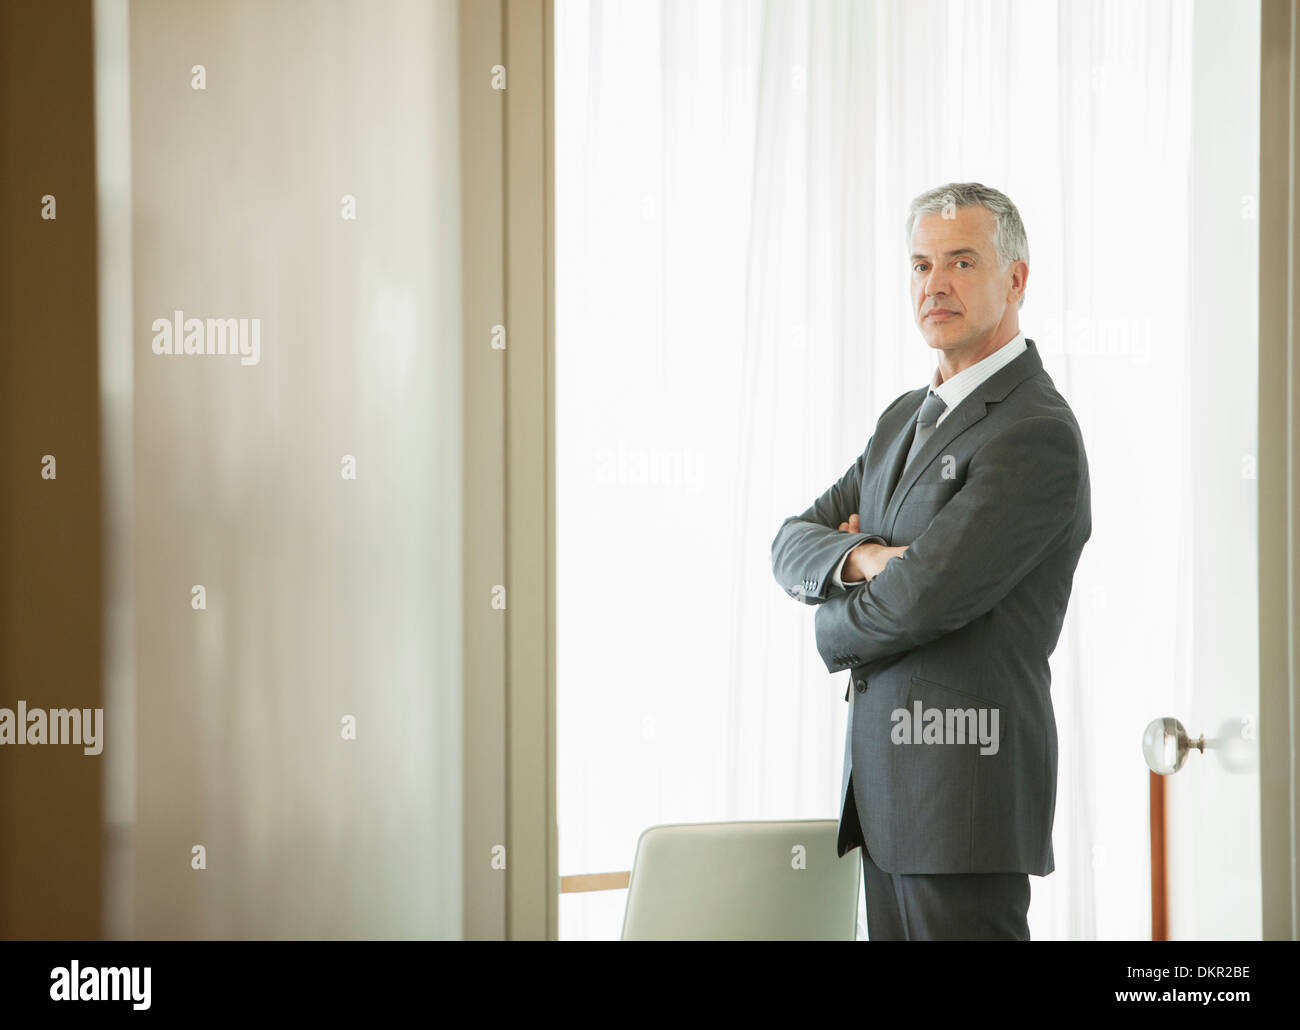 Businessman standing in doorway Stock Photo